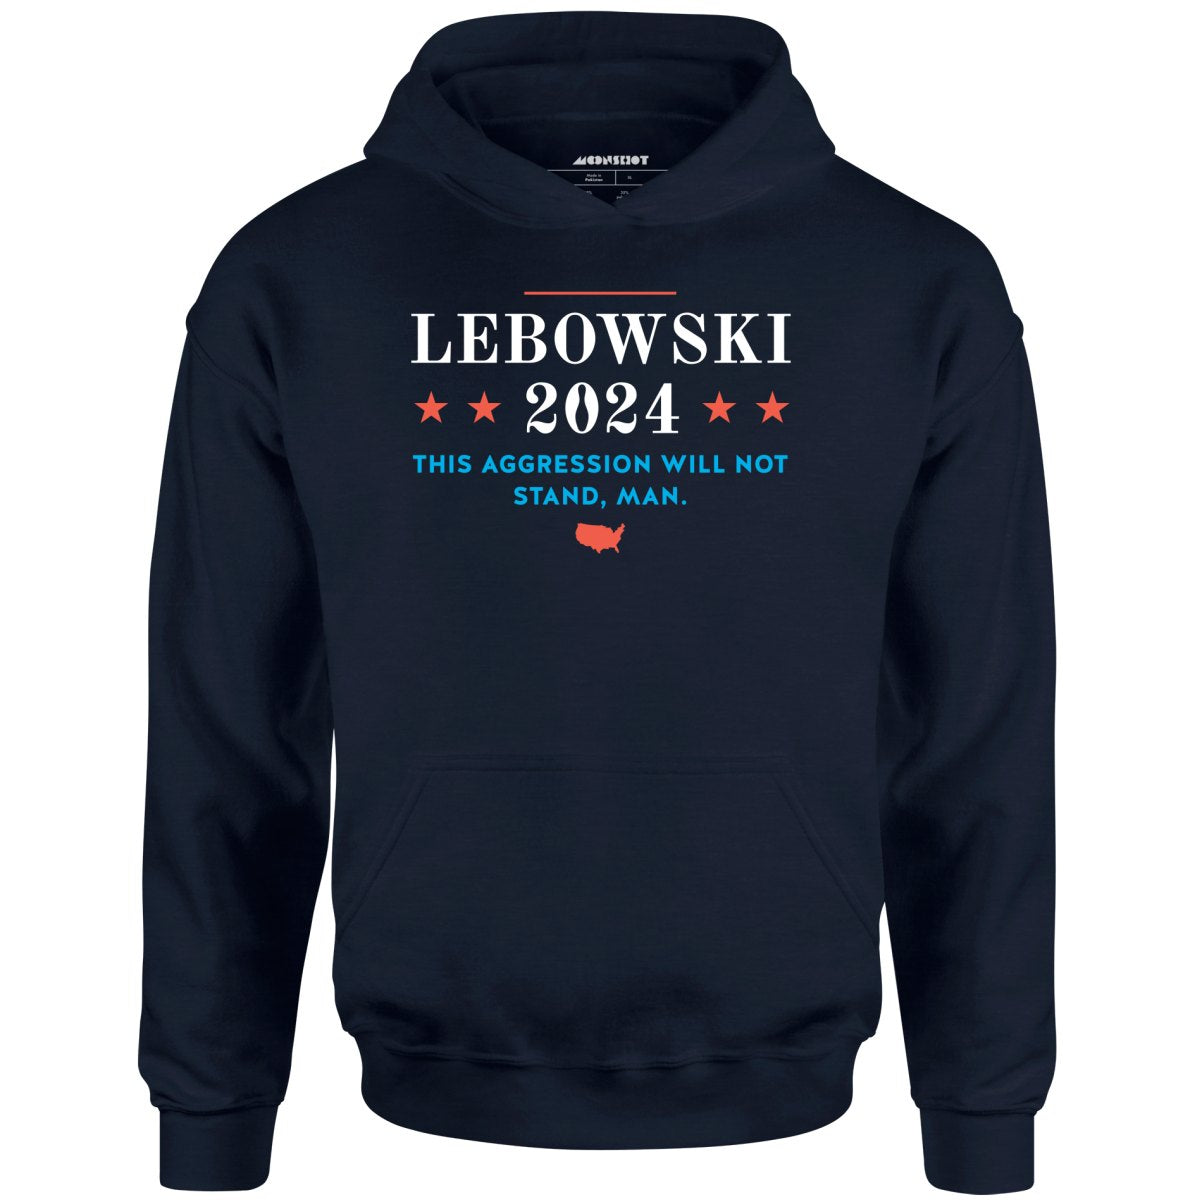 Lebowski 2024 - Unisex Hoodie